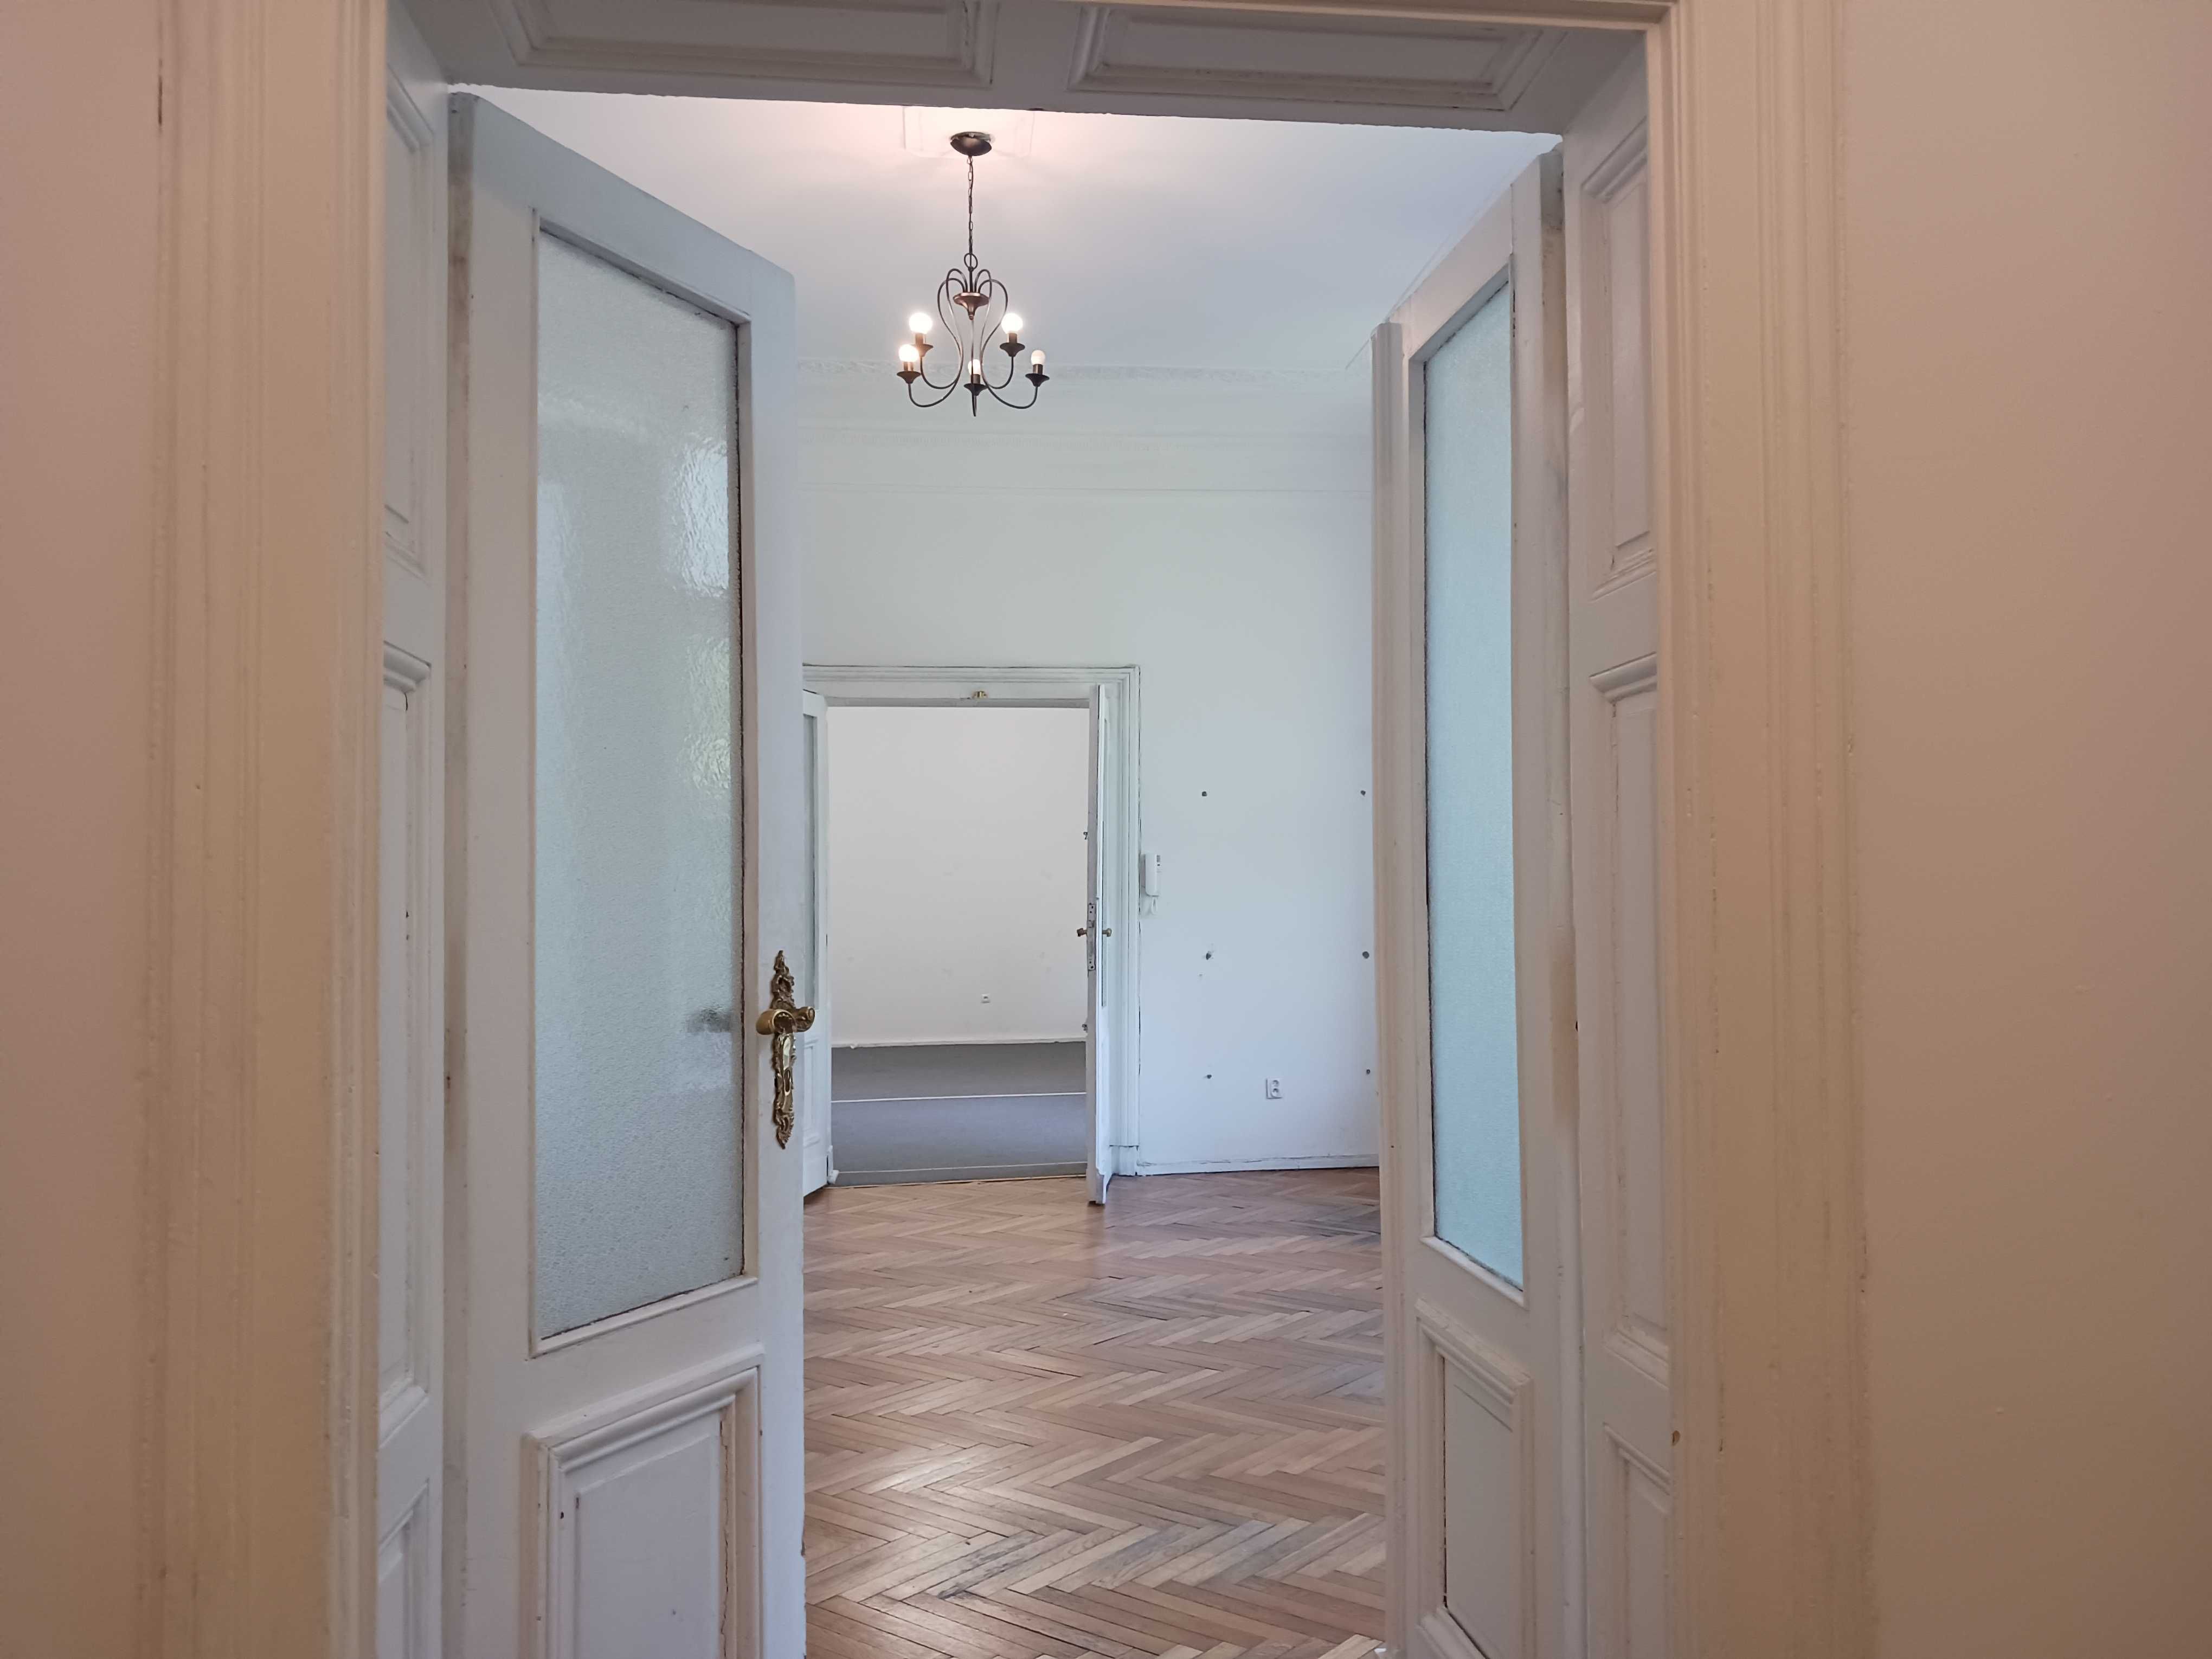 Do wynajęcia 100 m2 biura w eleganckim Pałacyku 3 pokoje bezpośrednio!